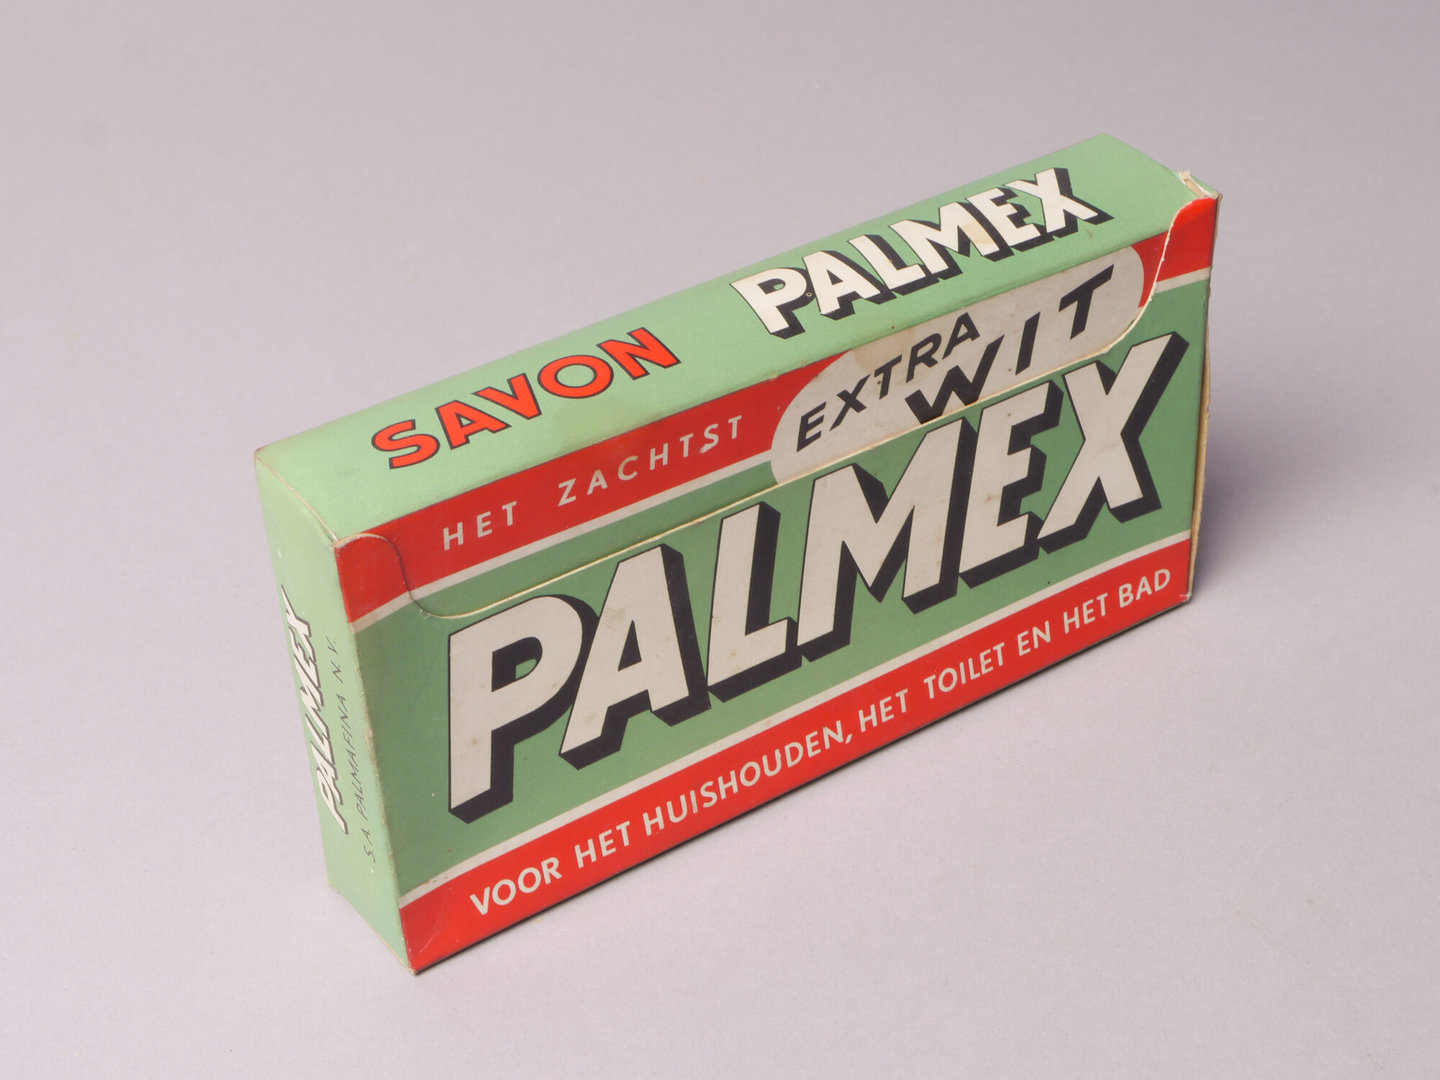 Doos met huishoudzeep van het merk Palmex